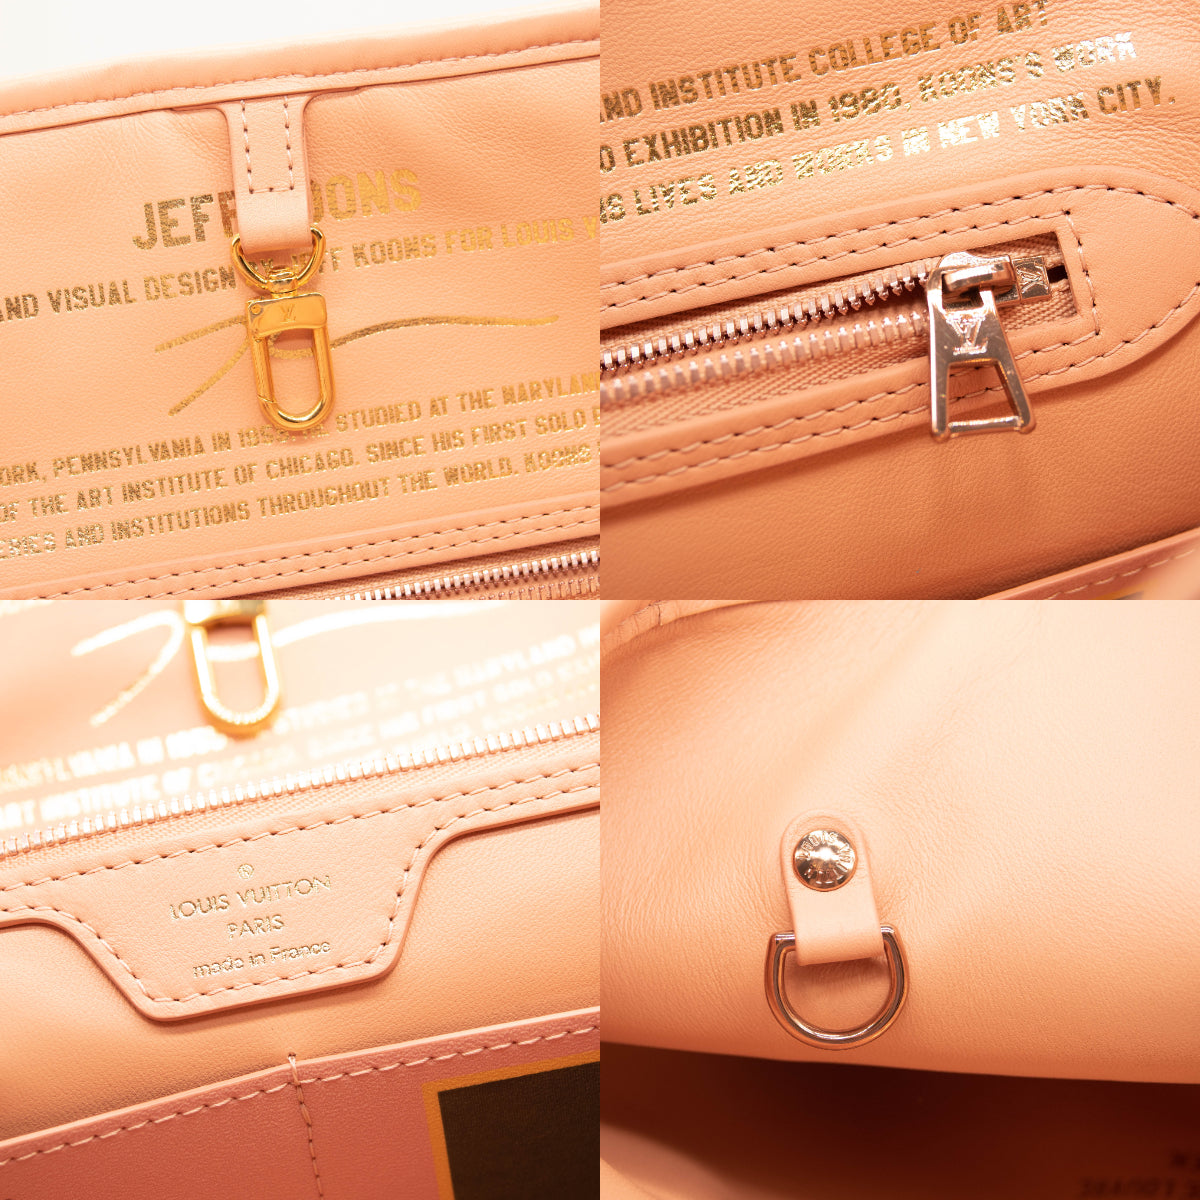 Louis Vuitton Rose Ballerine Bags  Bags, Top designer bags, Bags designer